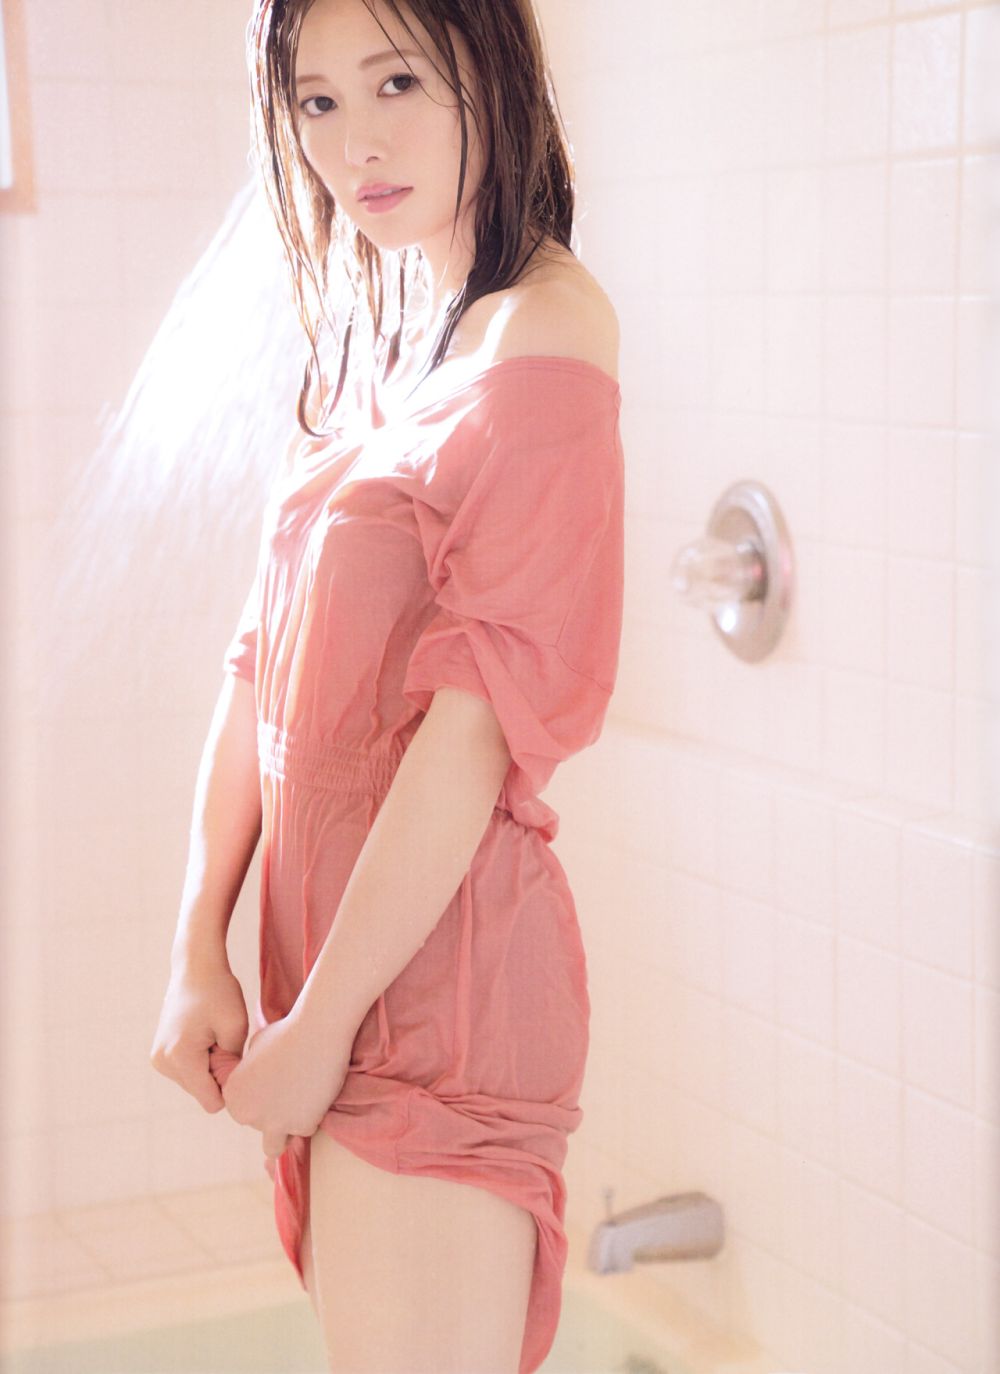 Mai Shiraishi Sexy and Hottest Photos , Latest Pics